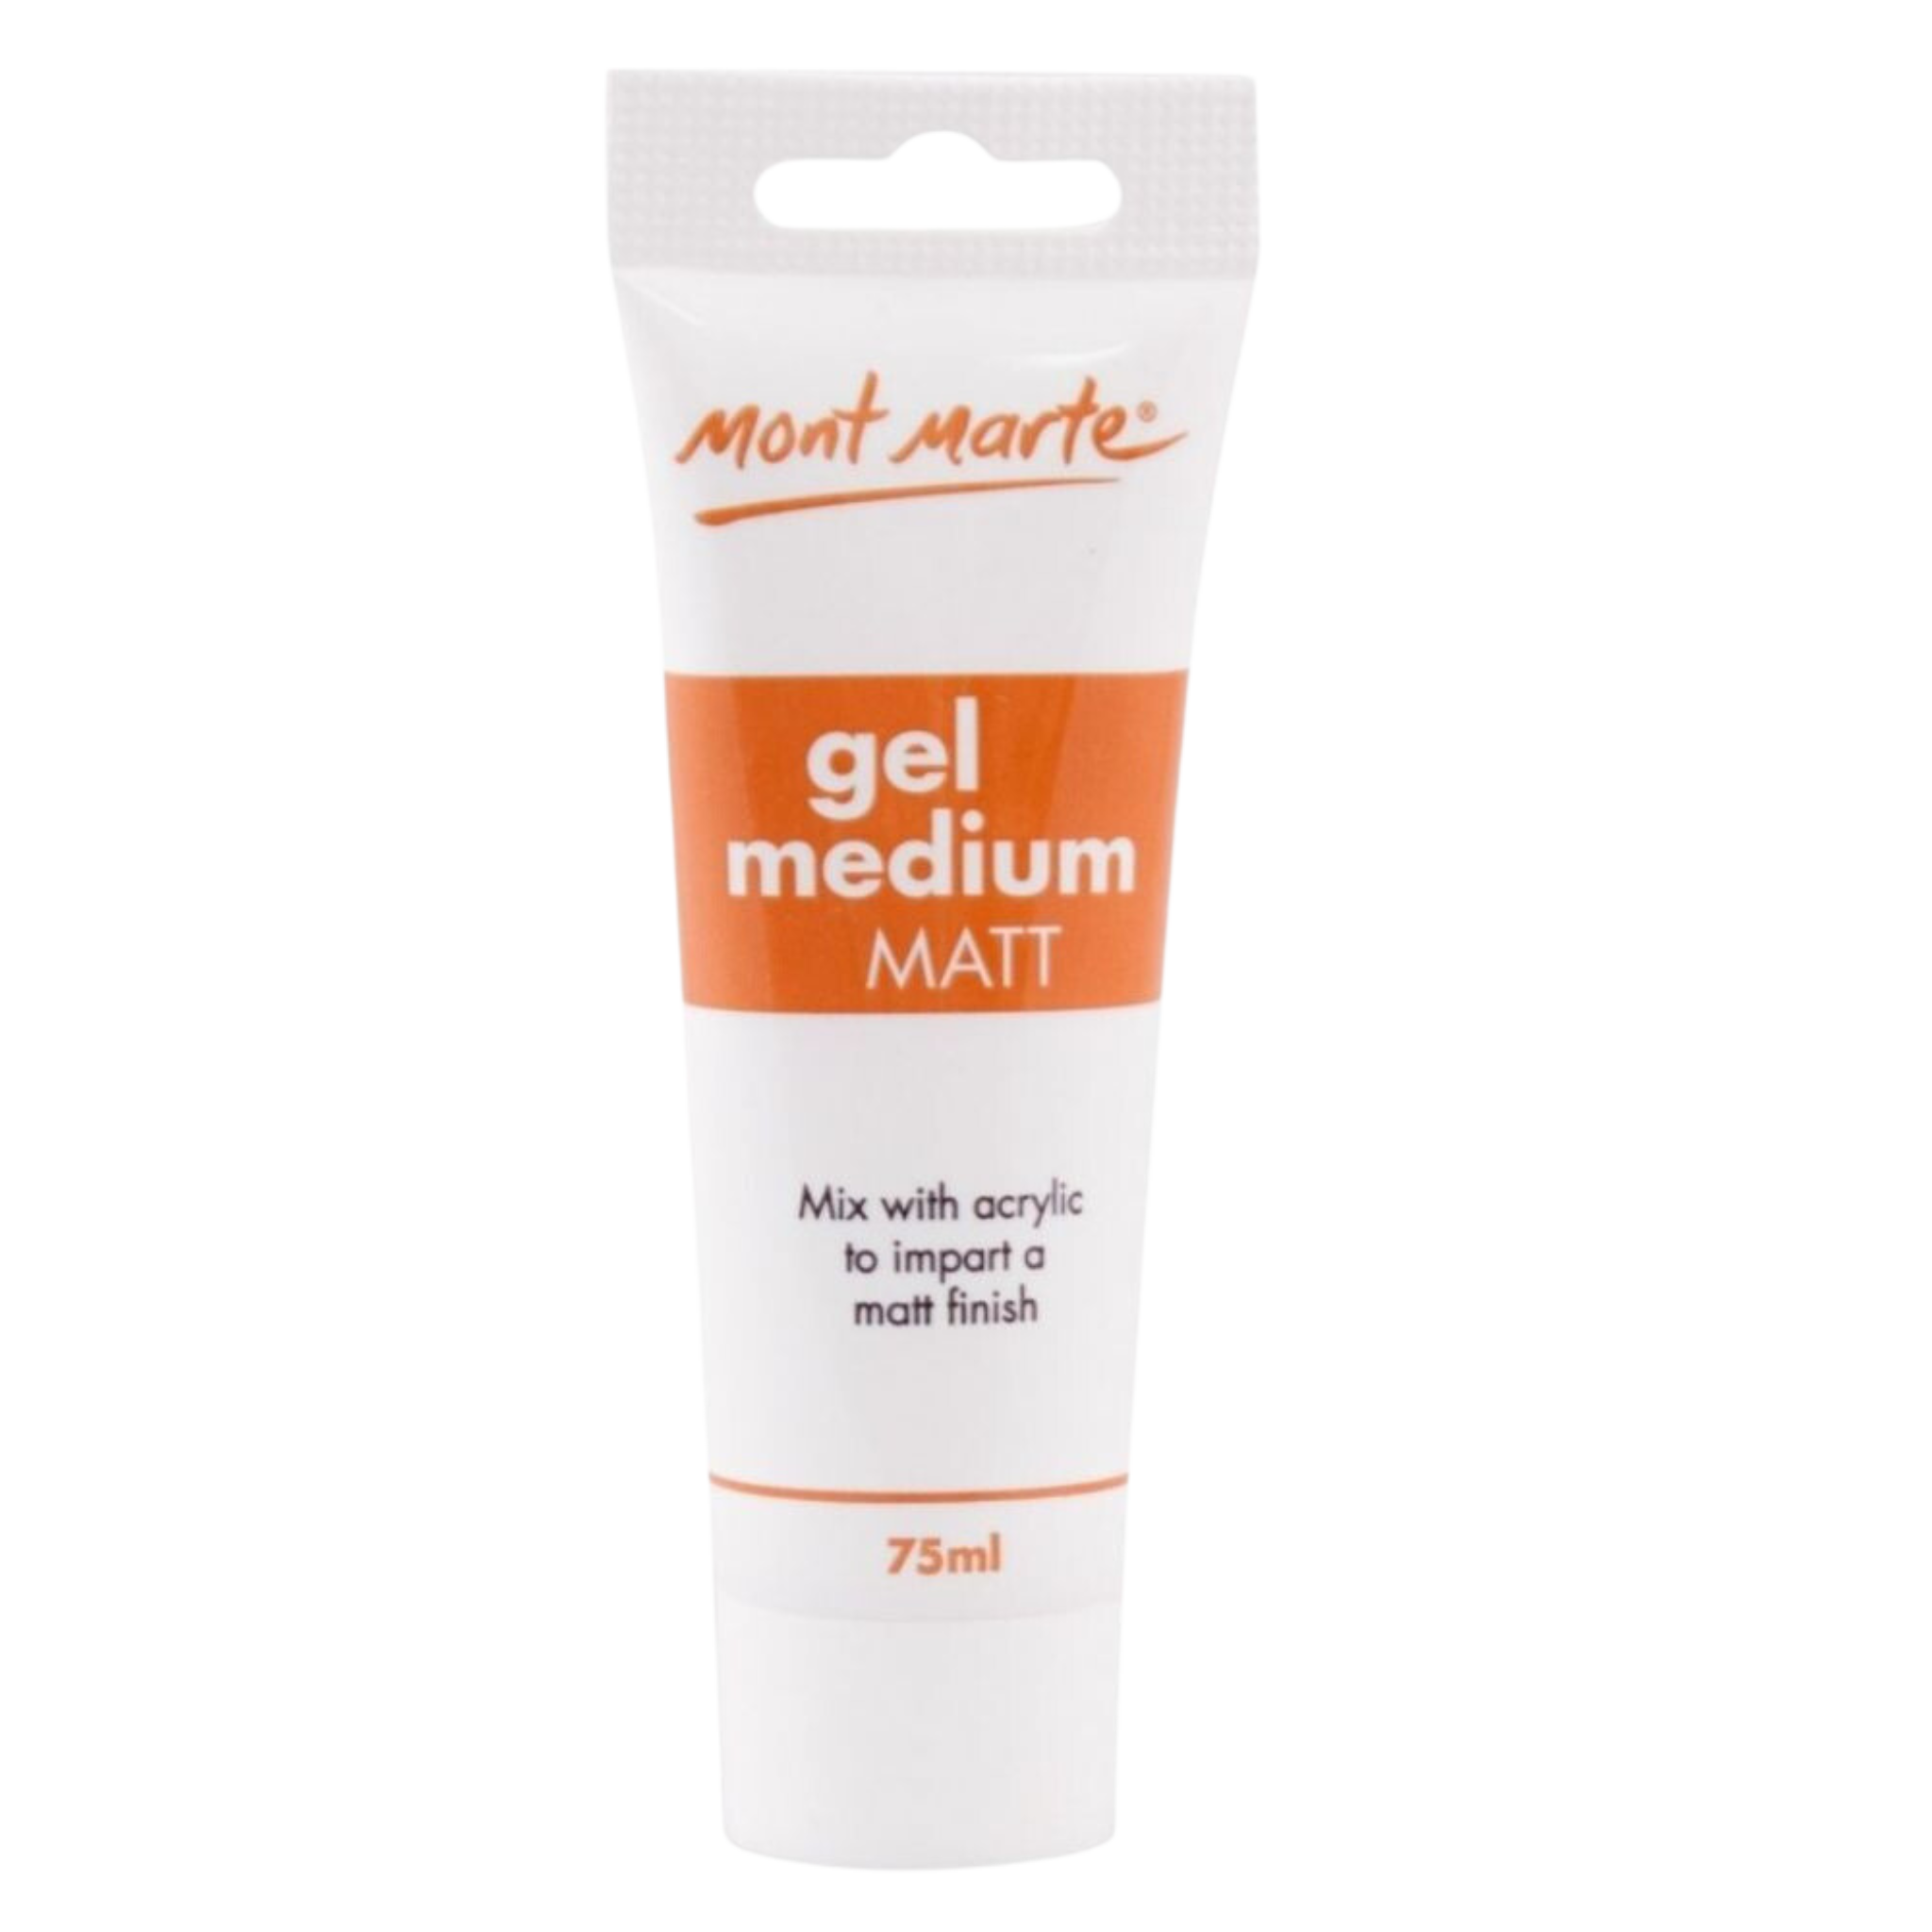 Mont Marte - Gel Medium  (Matt)